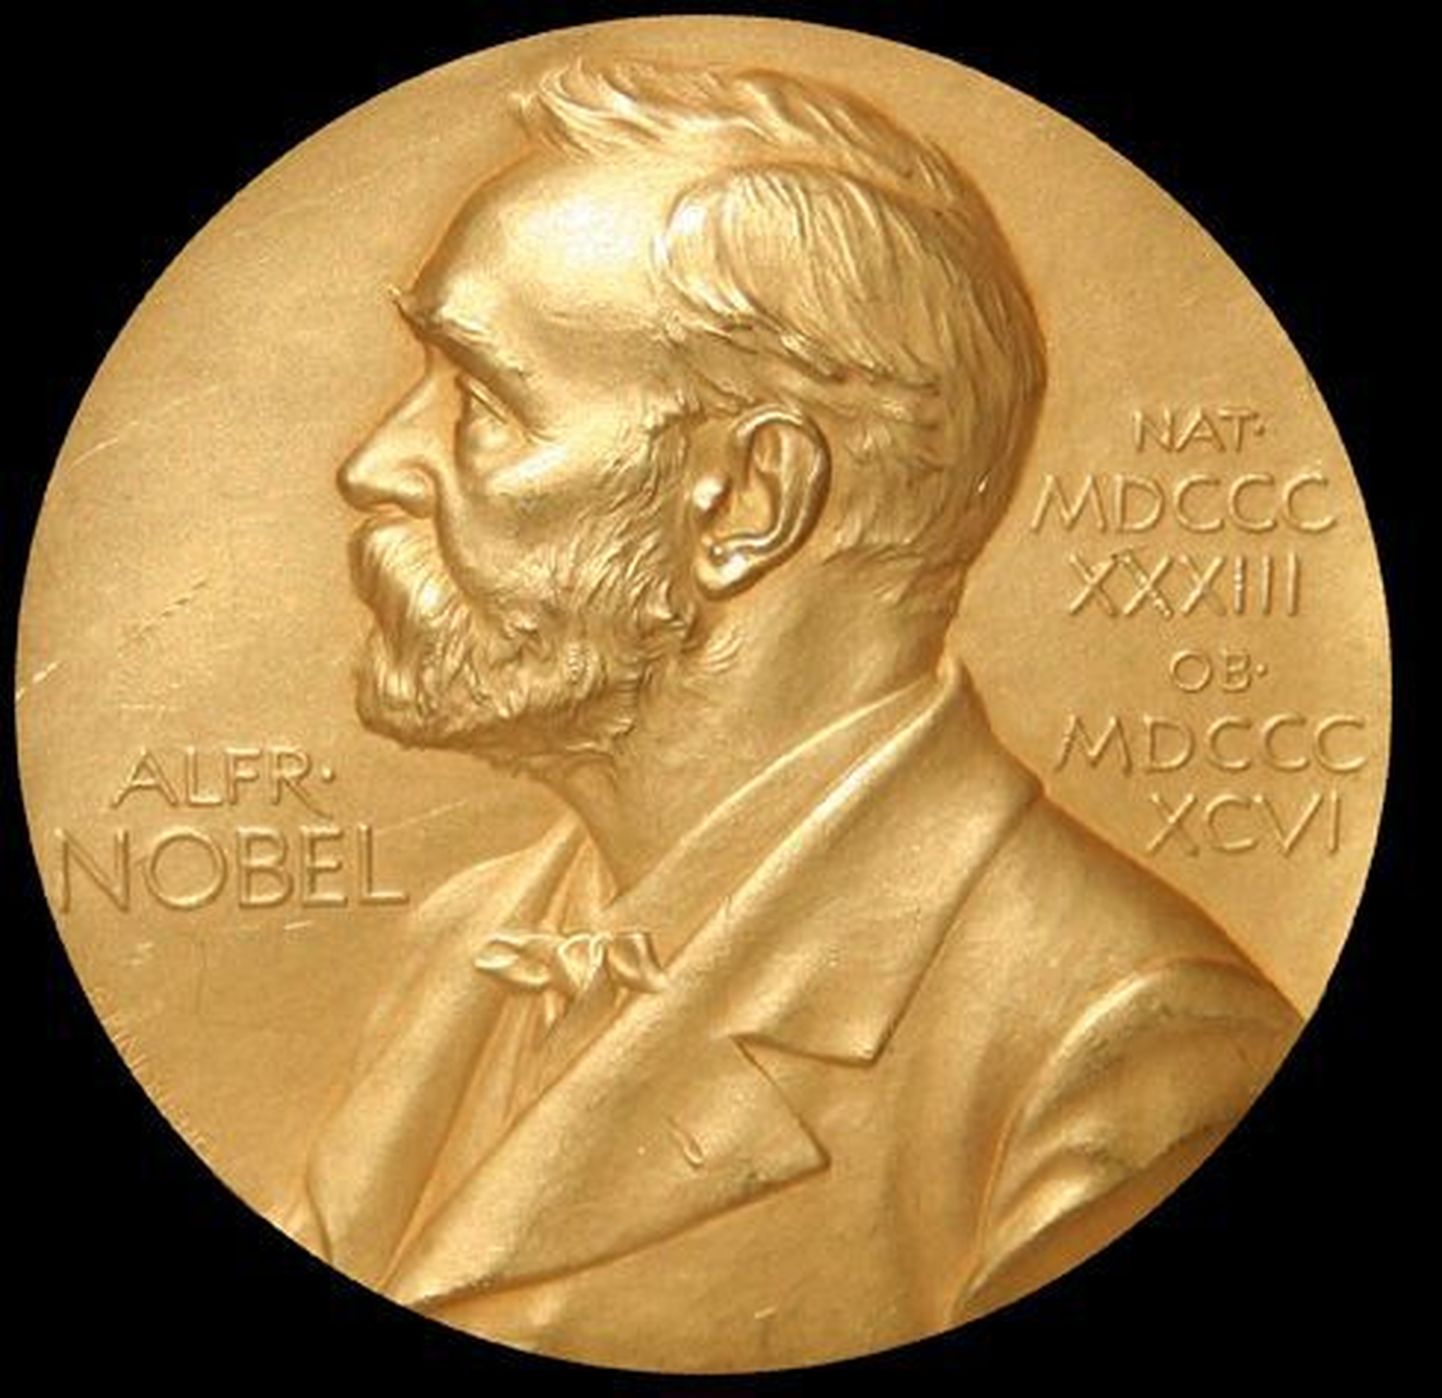 Täna tehakse teatavaks Nobeli rahupreemia saaja